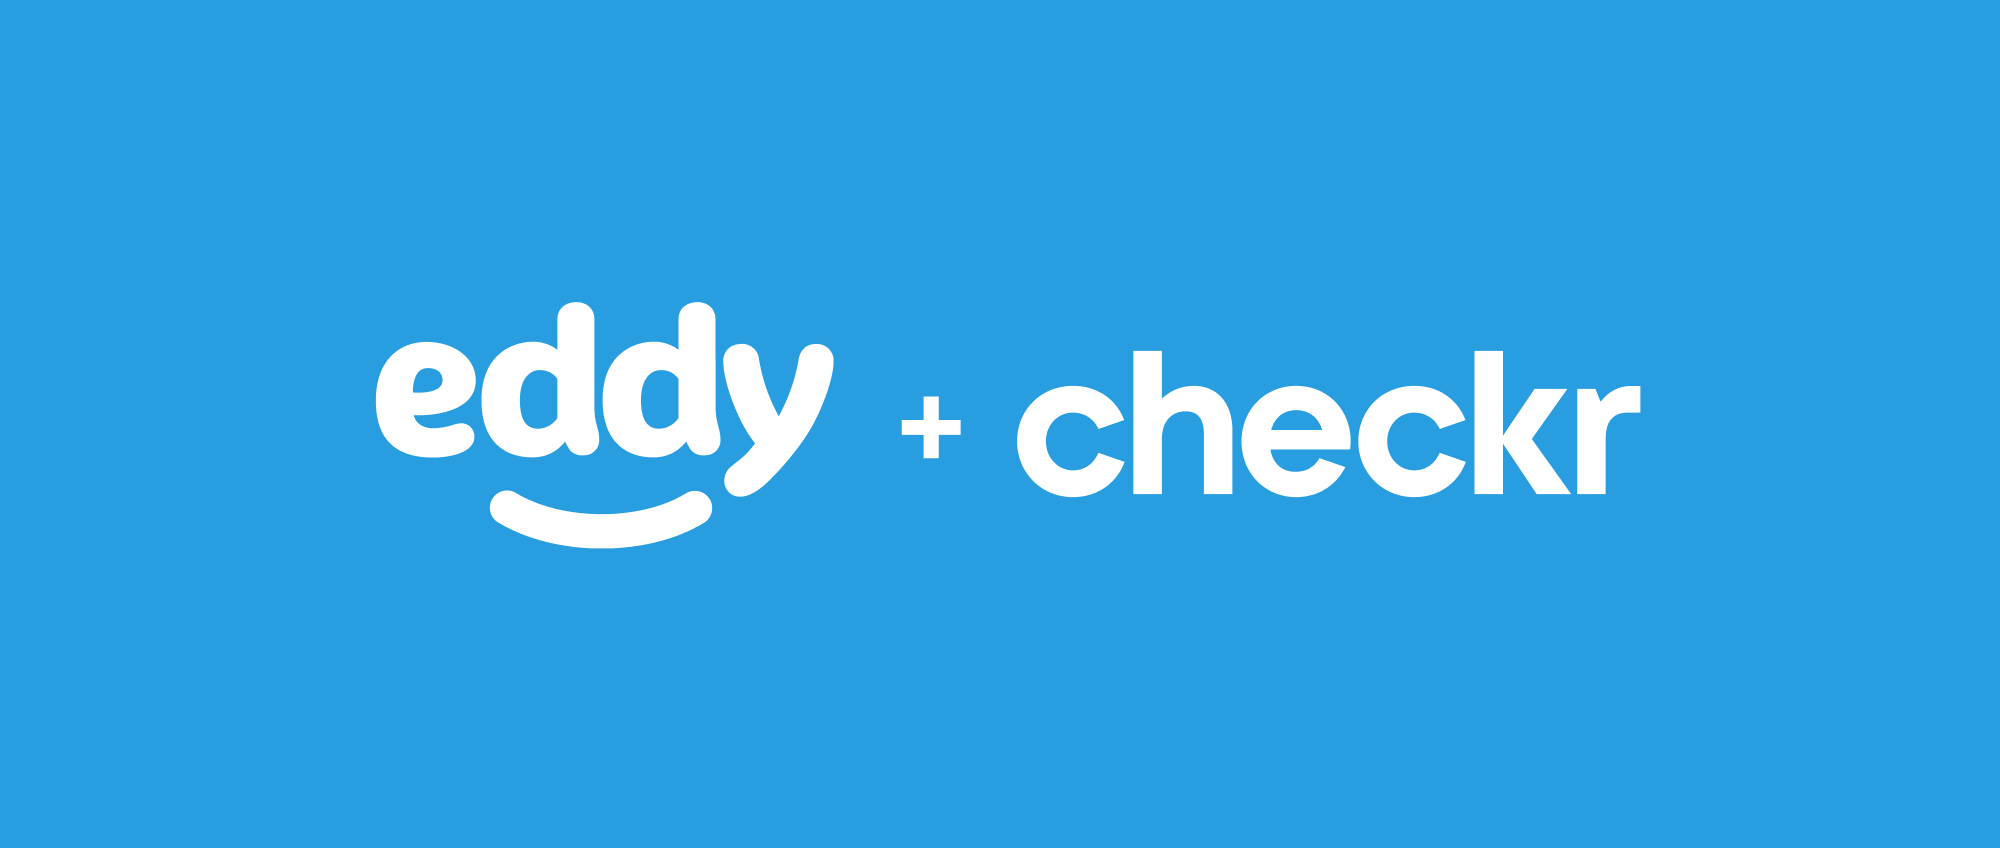 Eddy + Checkr: Simplify Background Checks